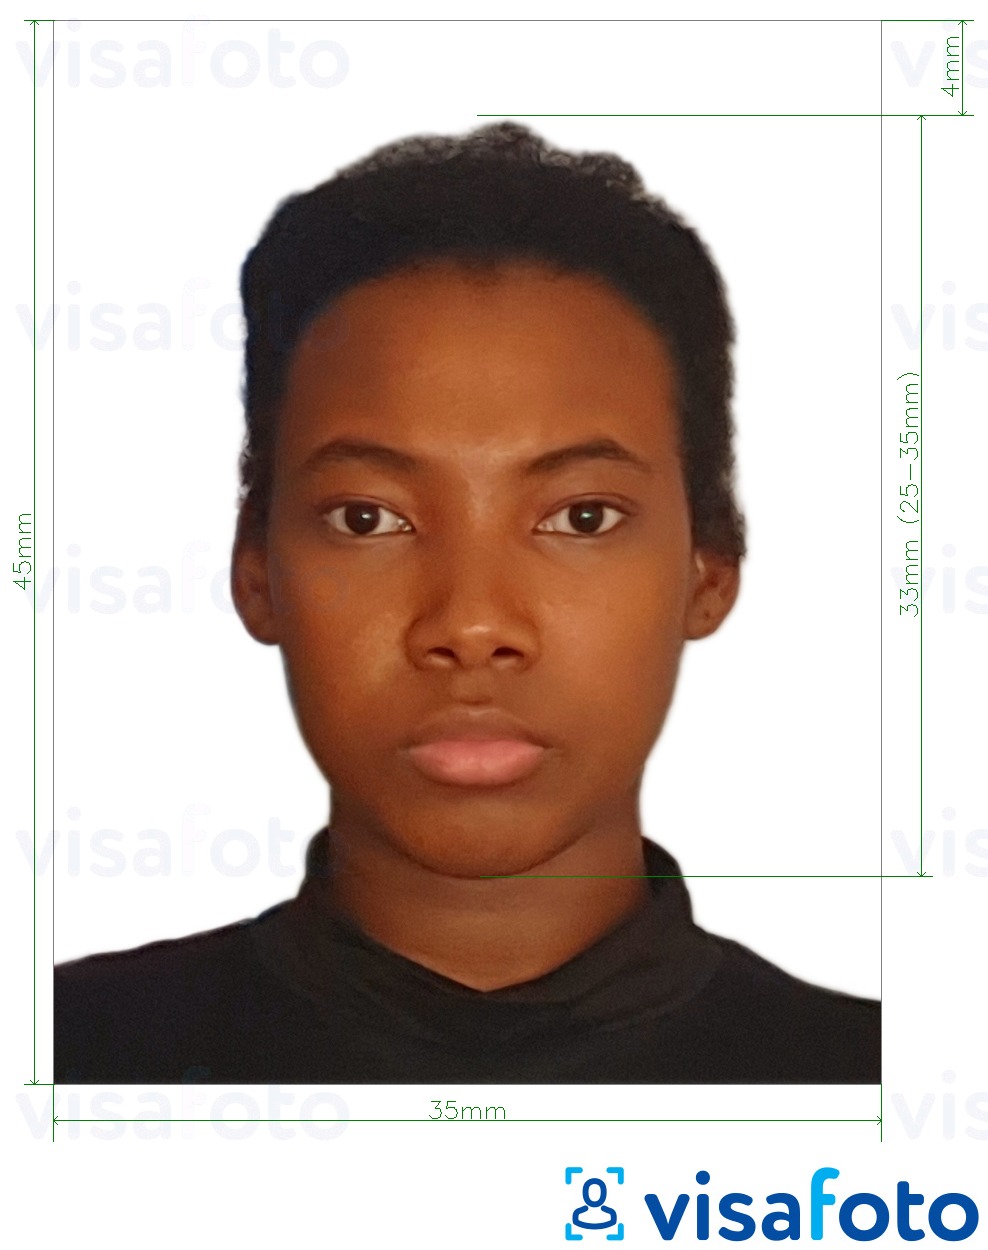 Przykład zdjęcia dla Paszport Jamajki 35x45 mm (3.5x4,5 cm) z podaniem dokładnego rozmiaru.